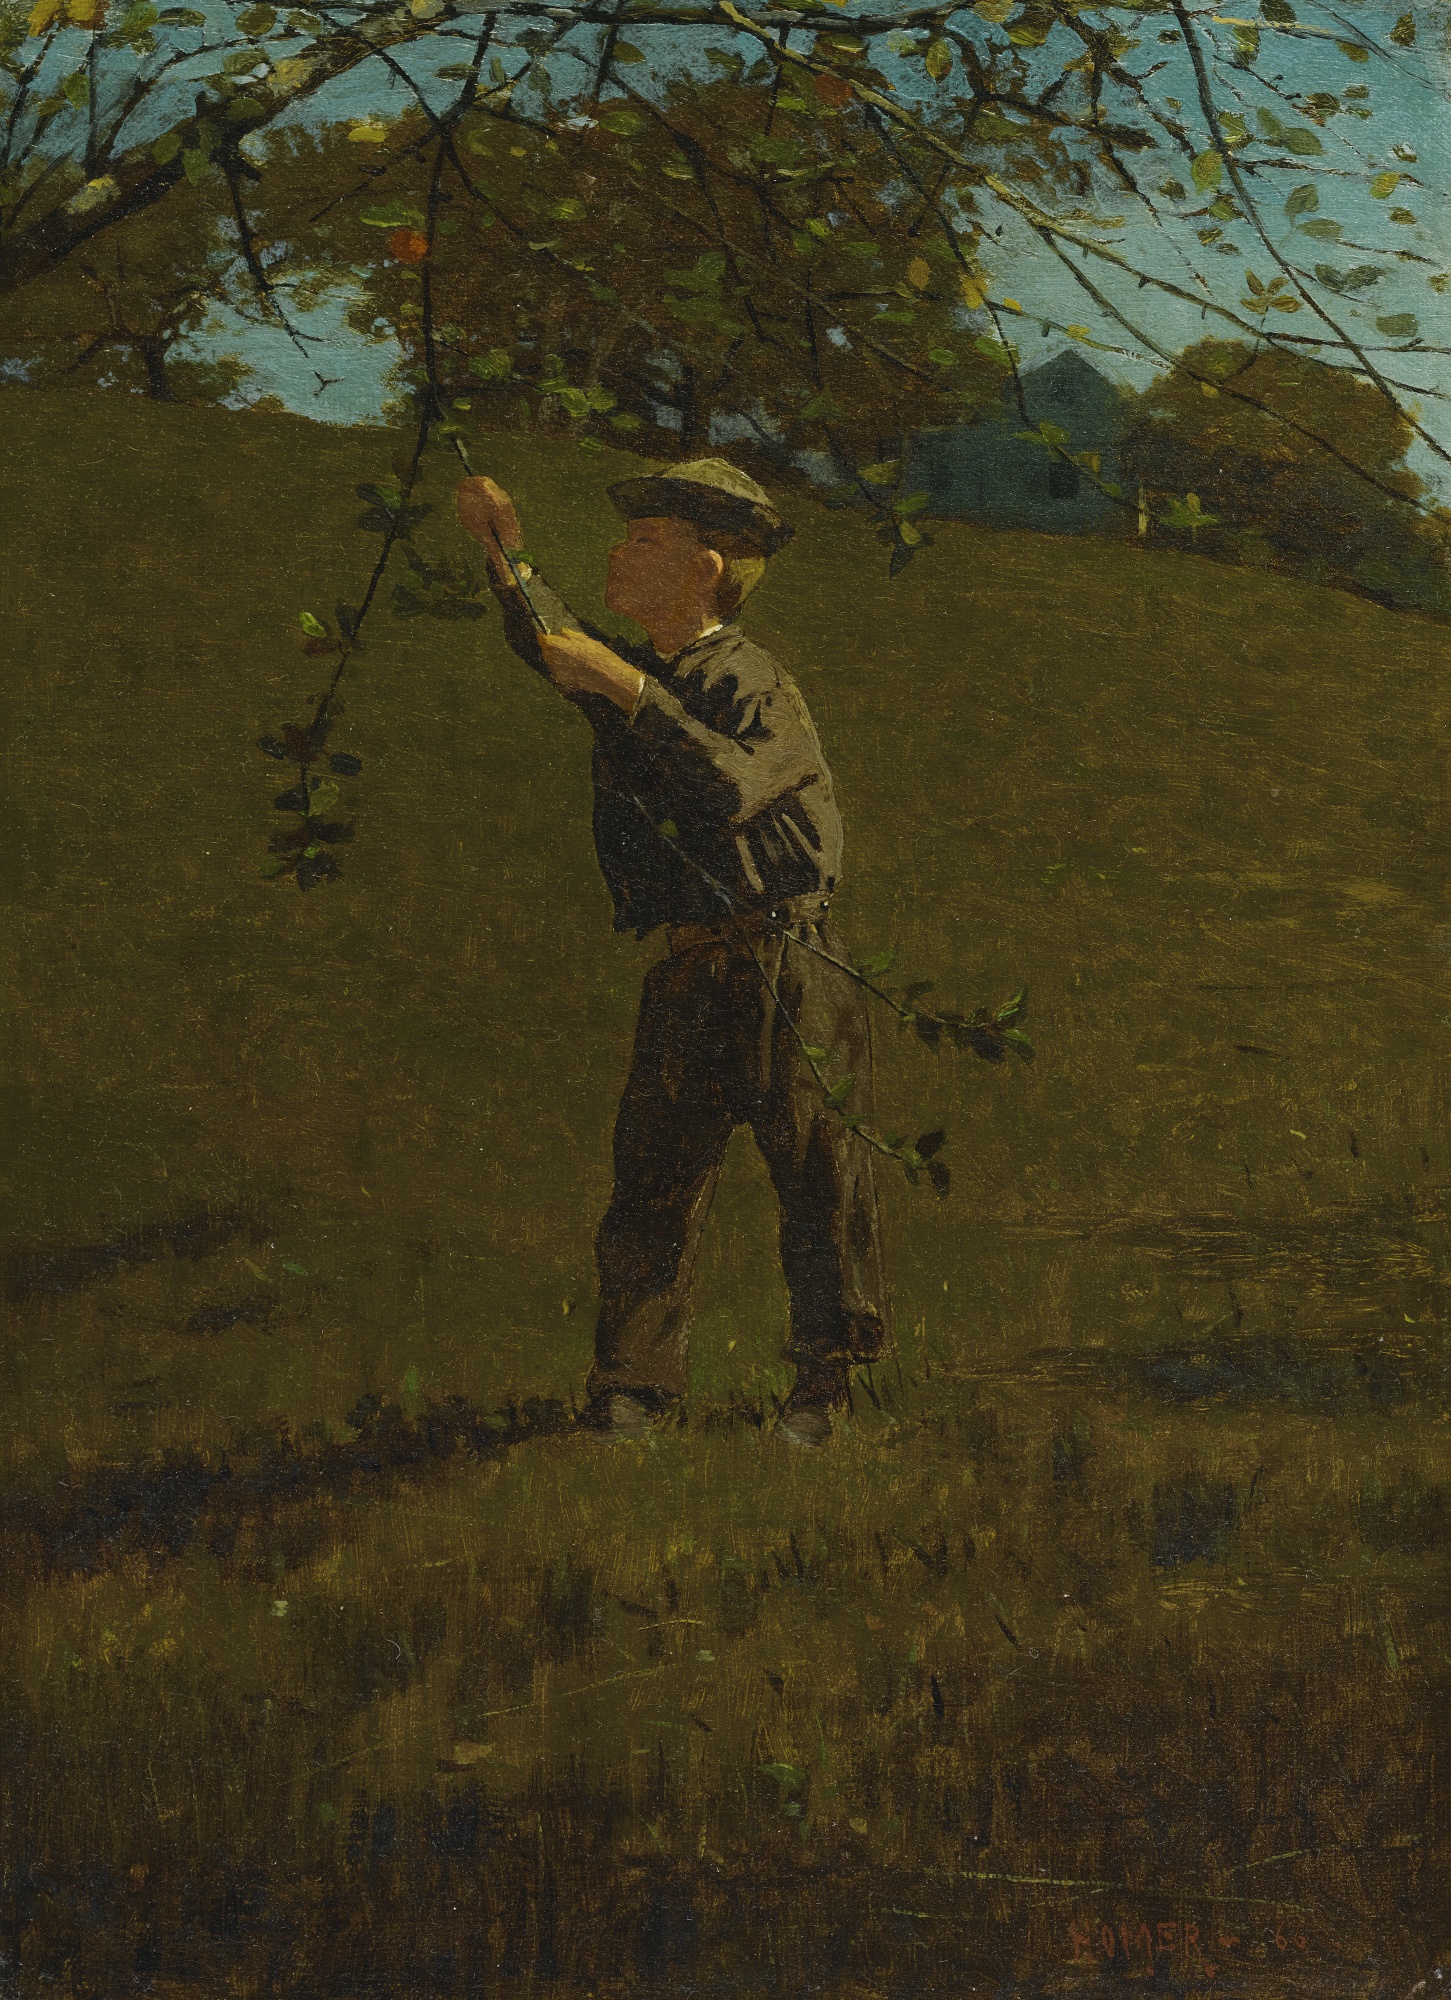 Winslow Homer - Green apples (1866)